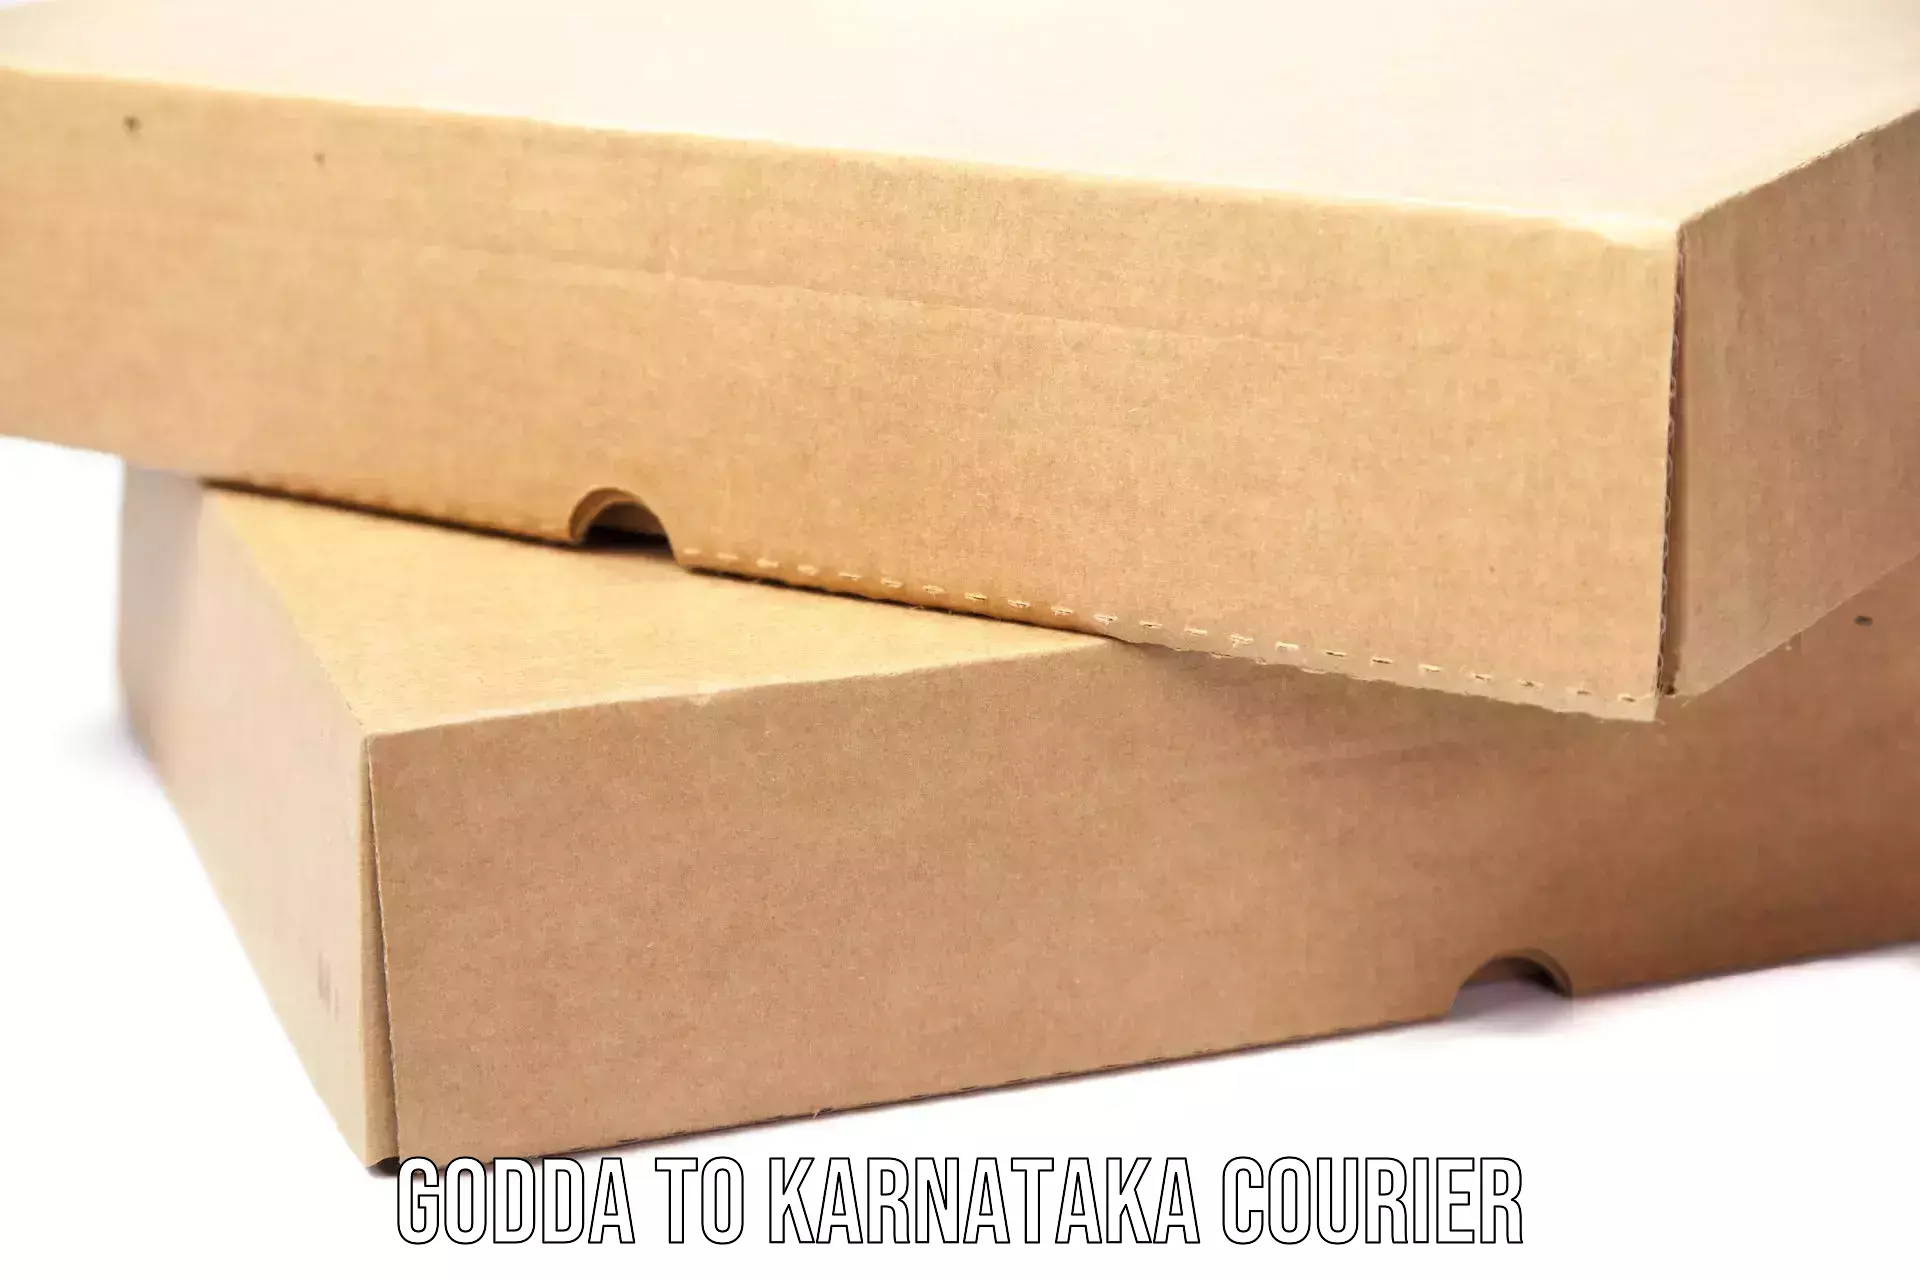 Optimized shipping services Godda to Kanakapura